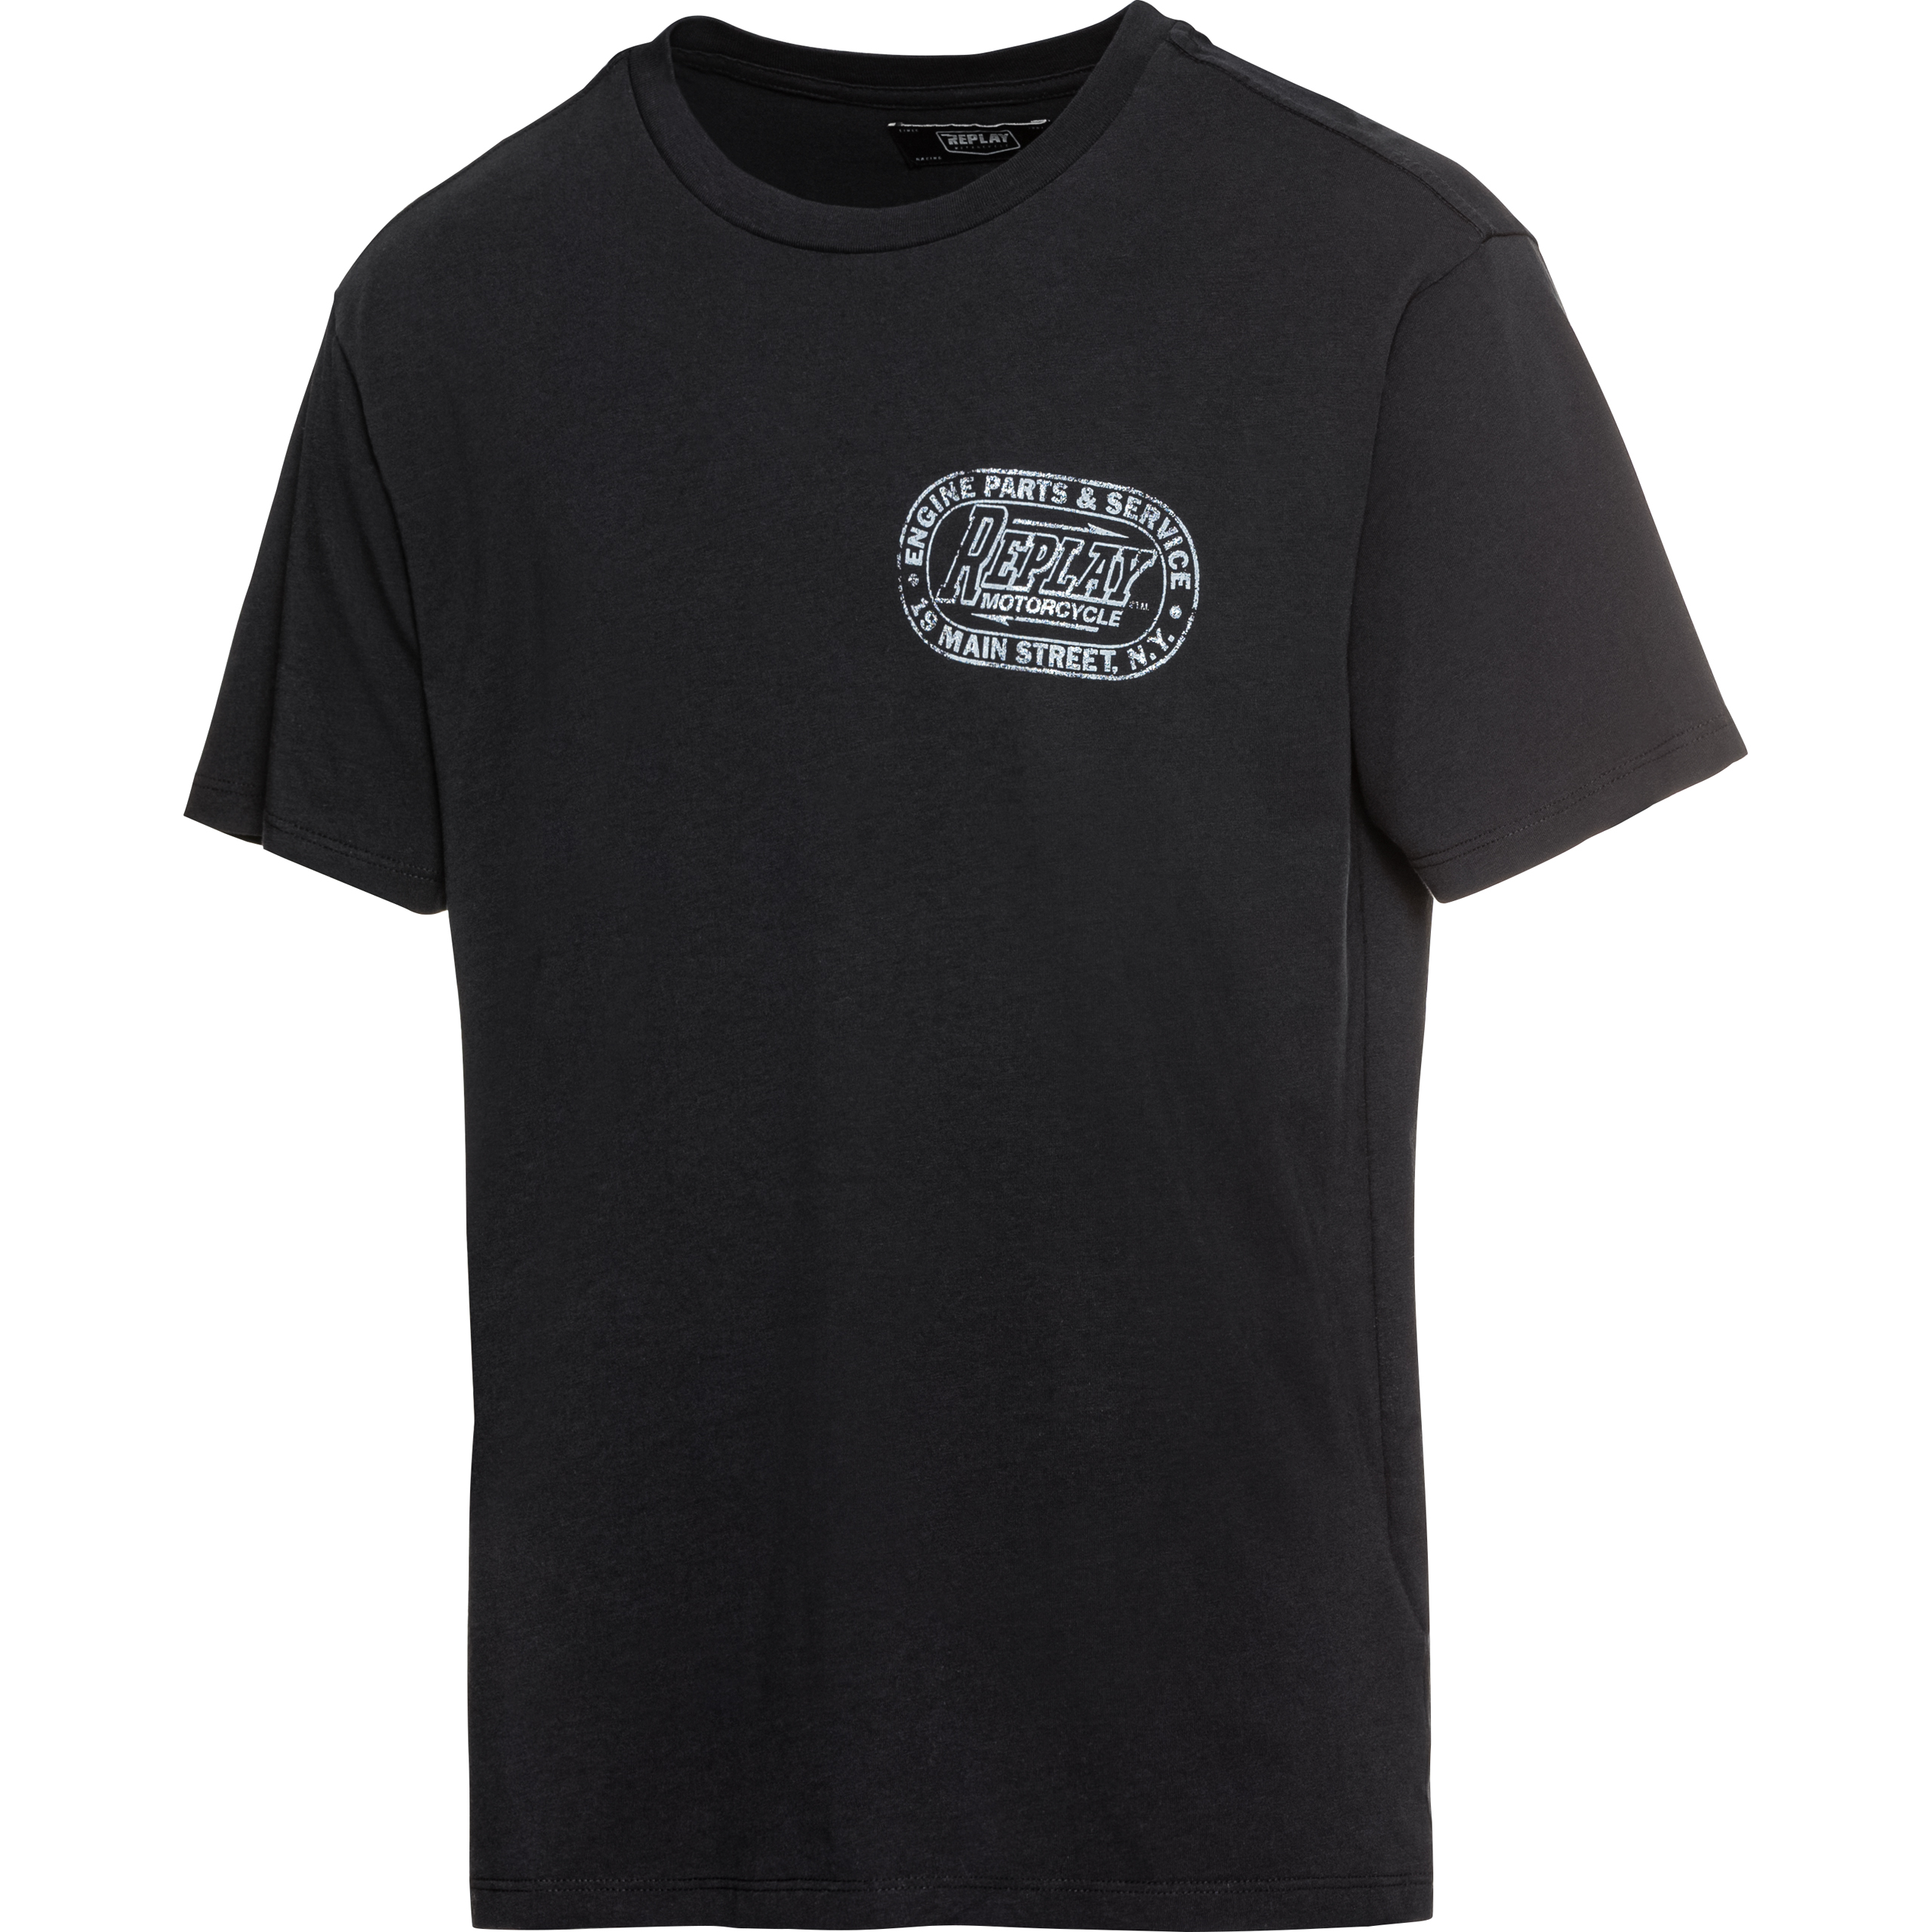 Buy Black - POLO Exclusiv Motorrad T-Shirt Replay 1